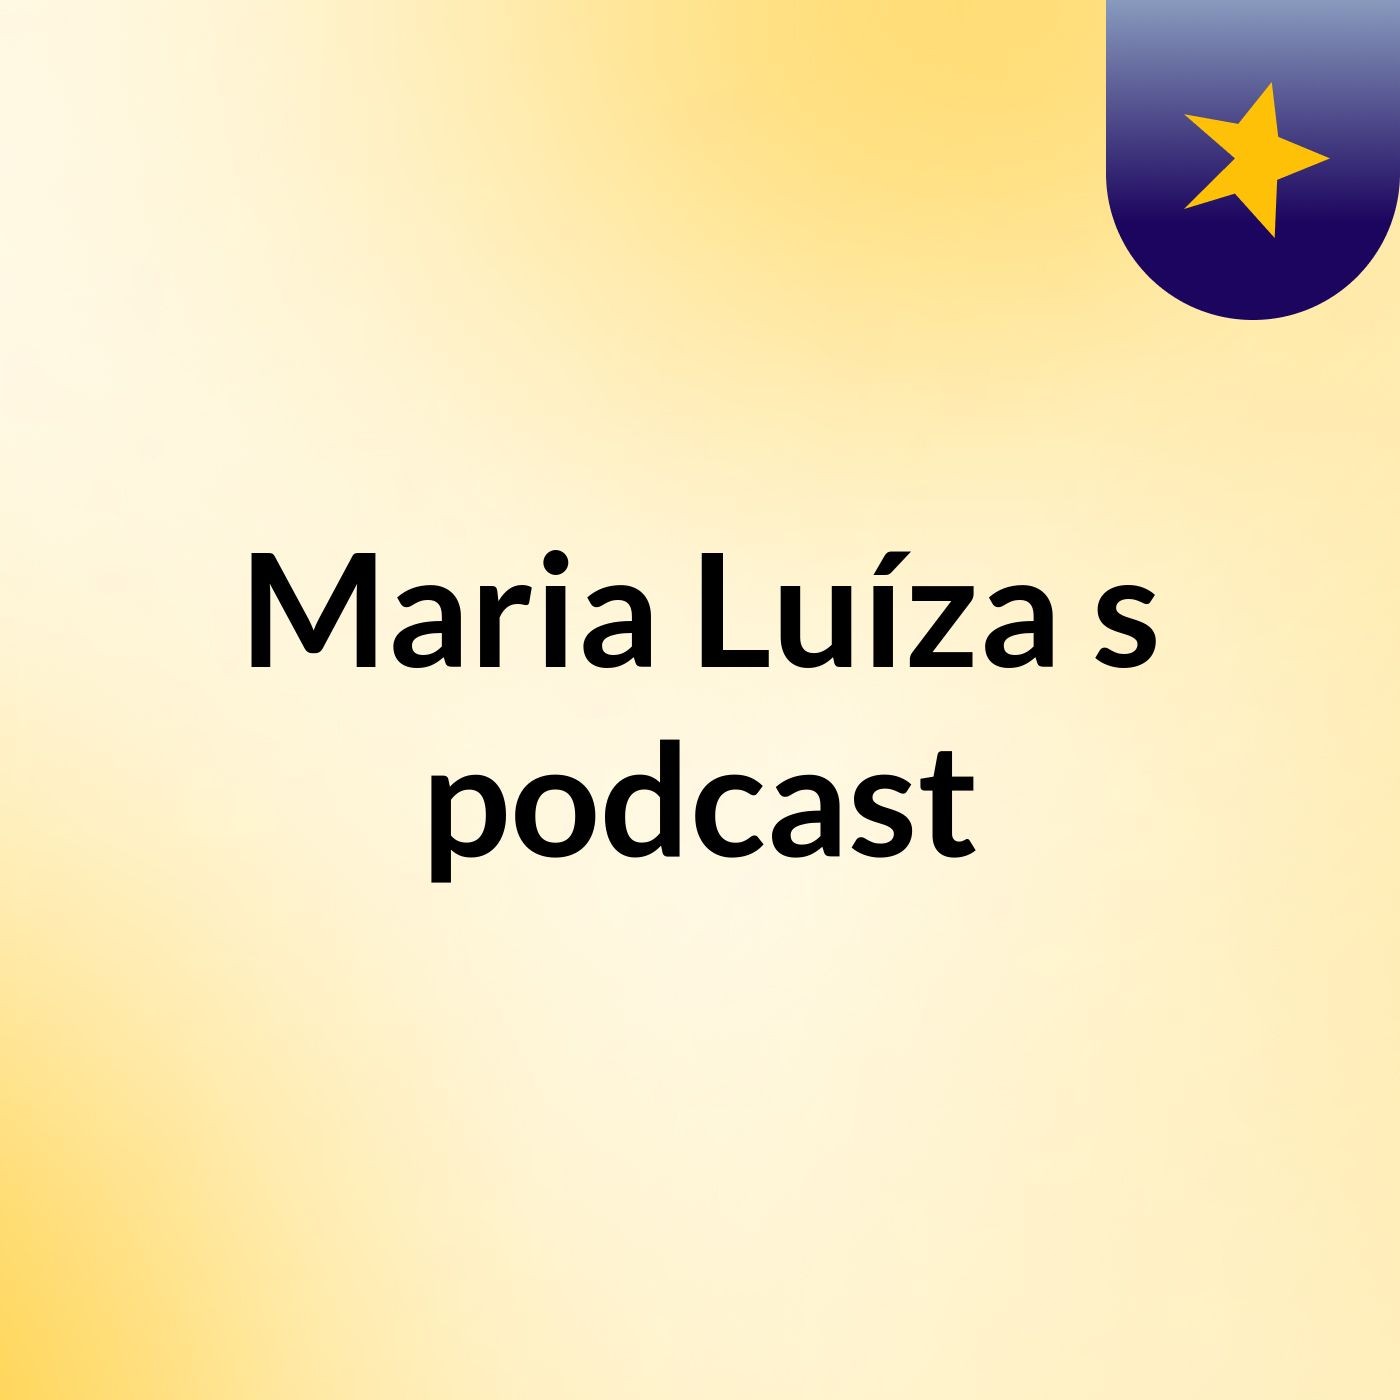 Maria Luíza's podcast